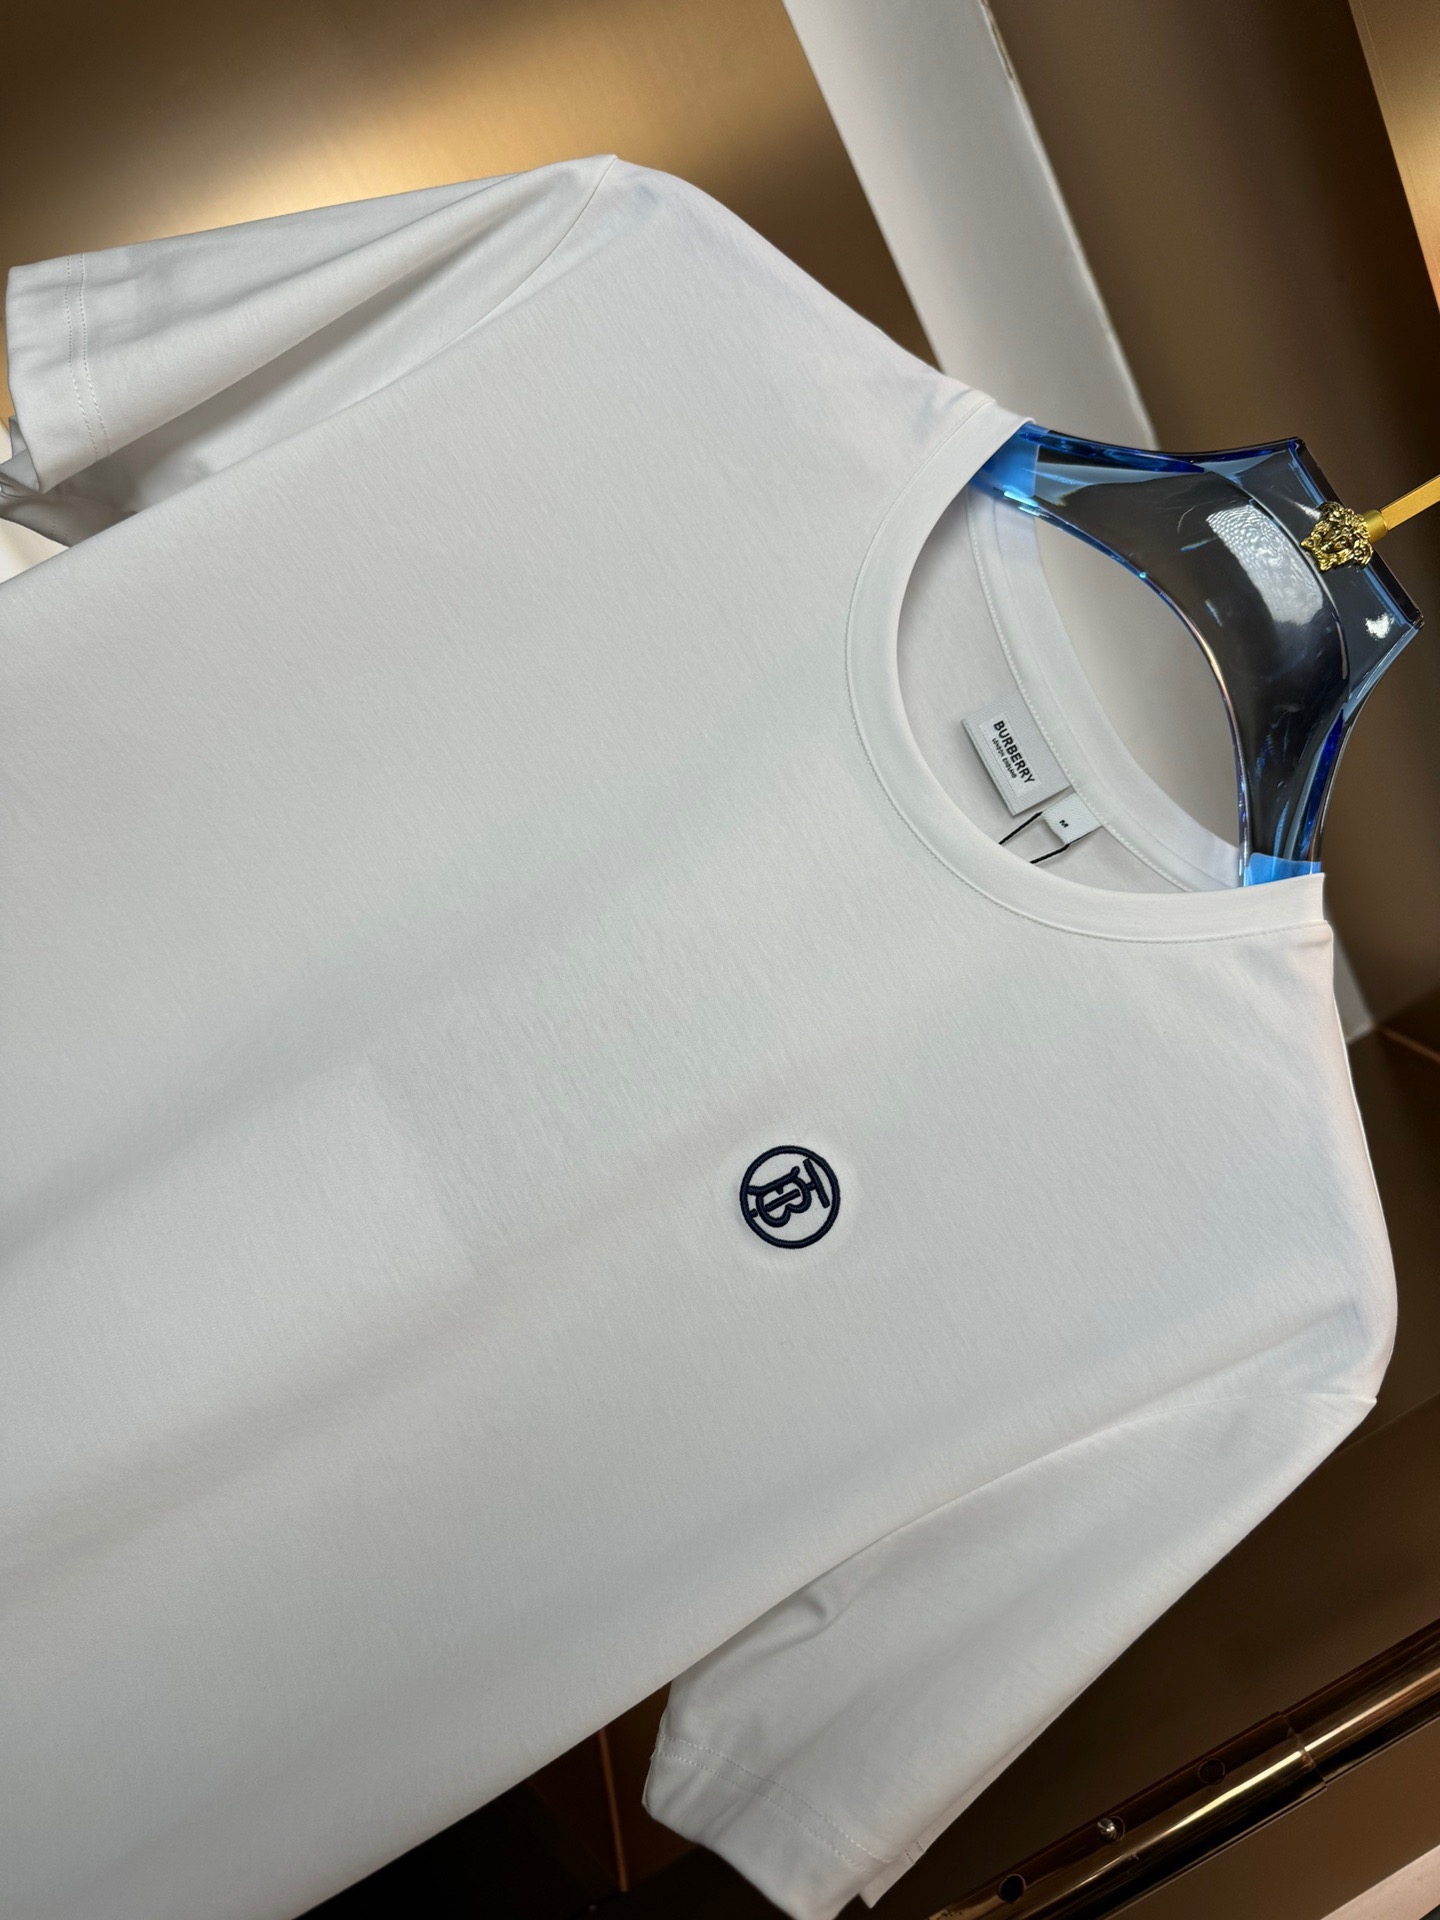 巴宝莉时尚简约短袖T恤简洁细腻的设计和高质细节而闻名裁剪完美后标最新英国吊点线技术更加完美用料一丝不苟适